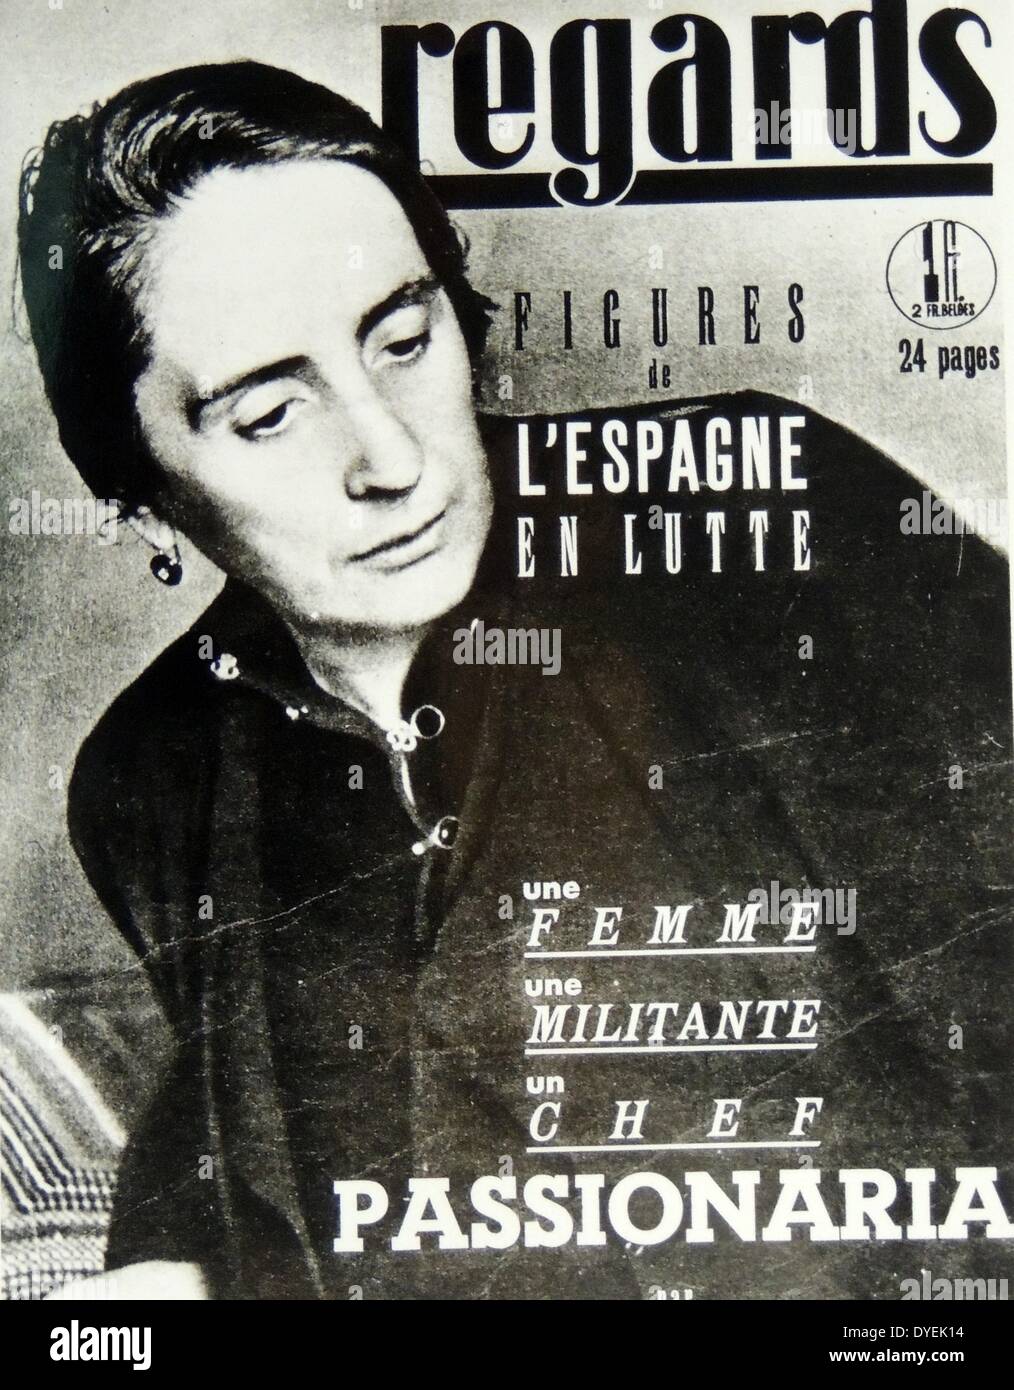 Isidora Dolores Ibárruri Gómez (9 décembre 1895 - 12 novembre 1989), plus connu comme "La Pasionaria", a